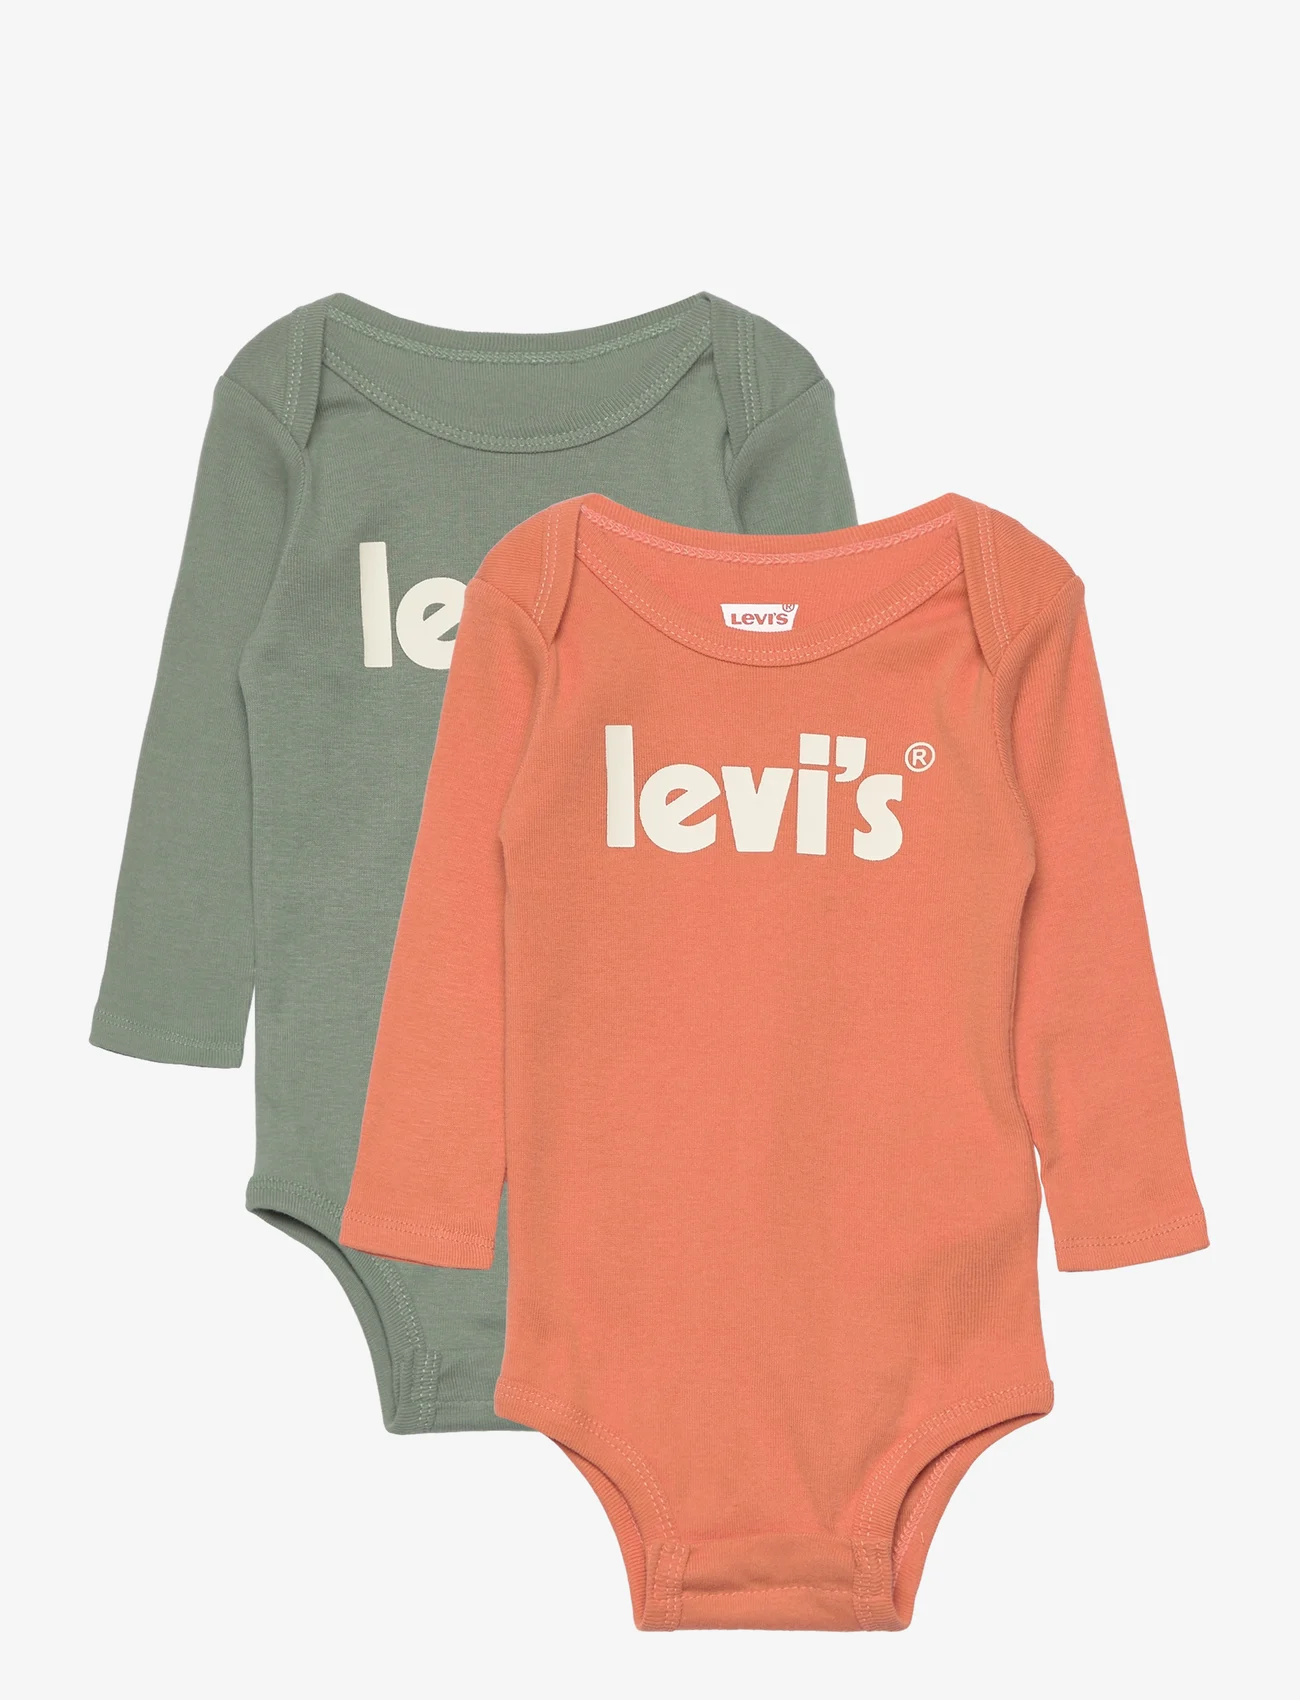 Levi's - Levi's® Poster Logo Long Sleeve Bodysuit 2-Pack - laveste priser - green - 0